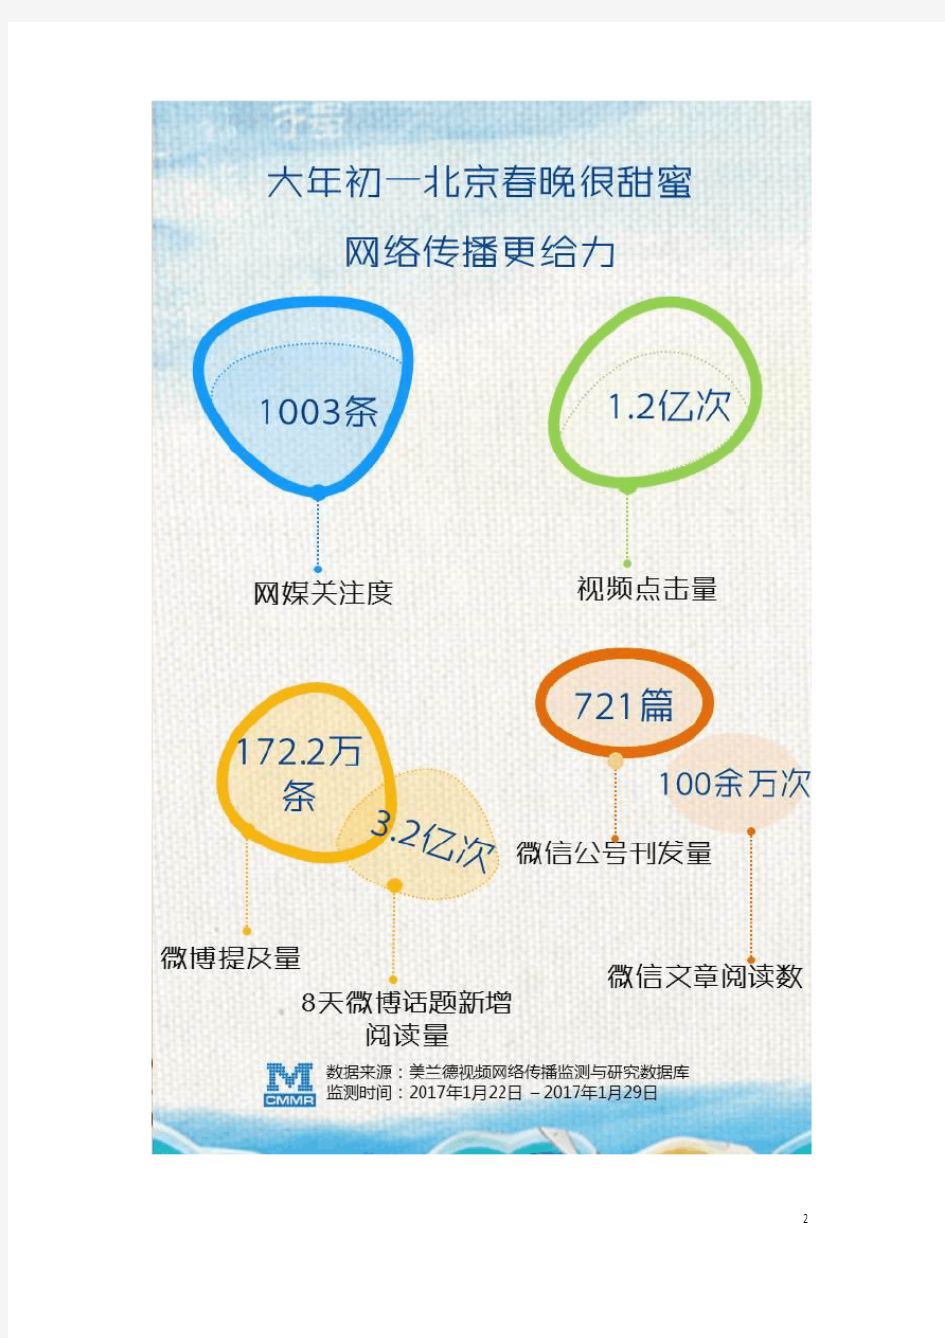 美兰德：2017鸡年初一京、沪、苏三大卫视春晚网络传播大数据盘析